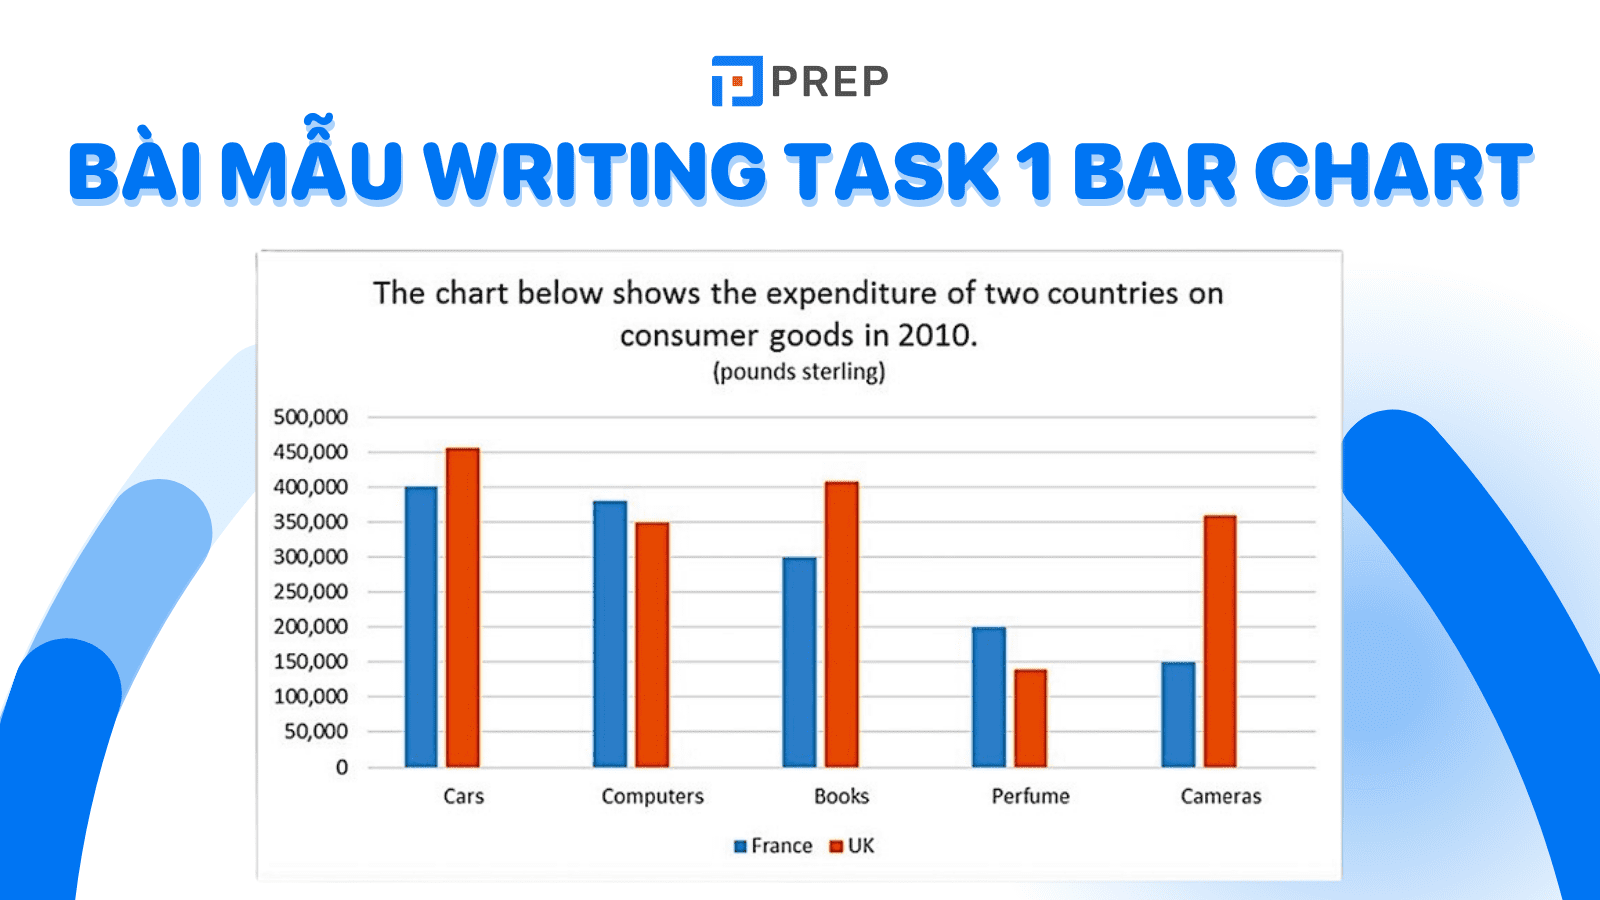 Tham khảo đề bài, bài mẫu Writing Task 1 Bar Chart mới nhất